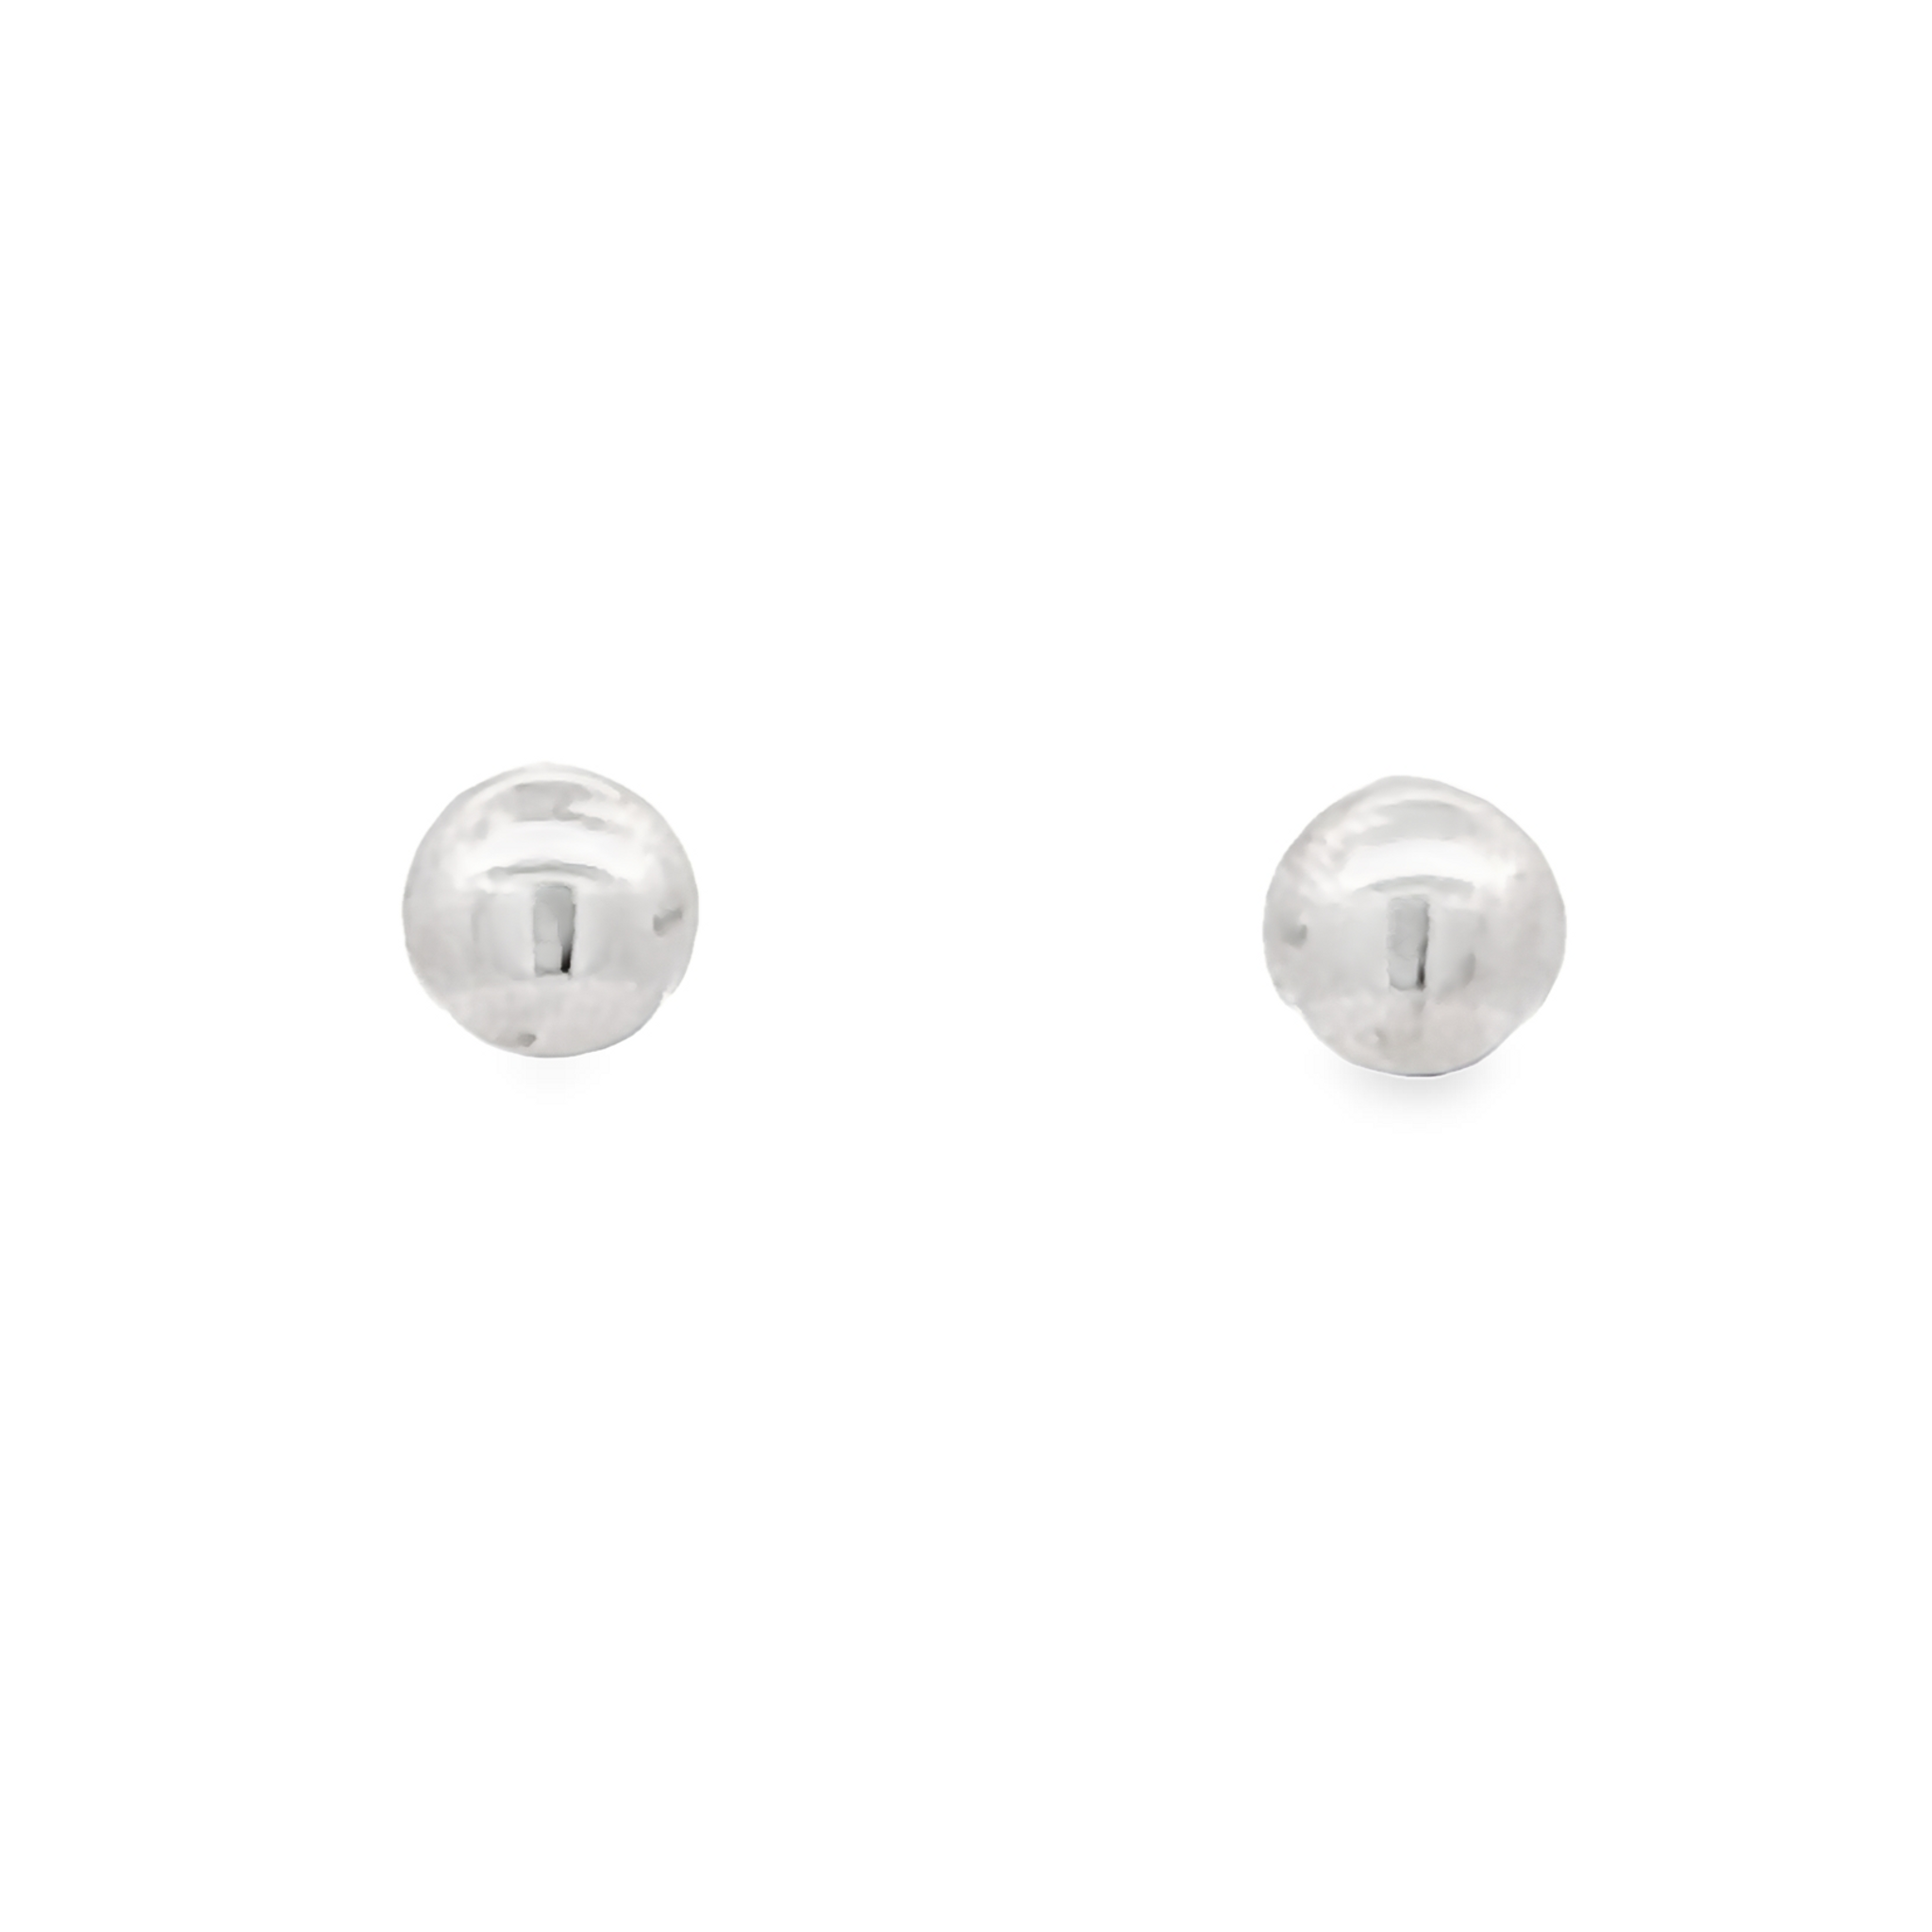 6mm Sterling Silver Ball Stud Earrings